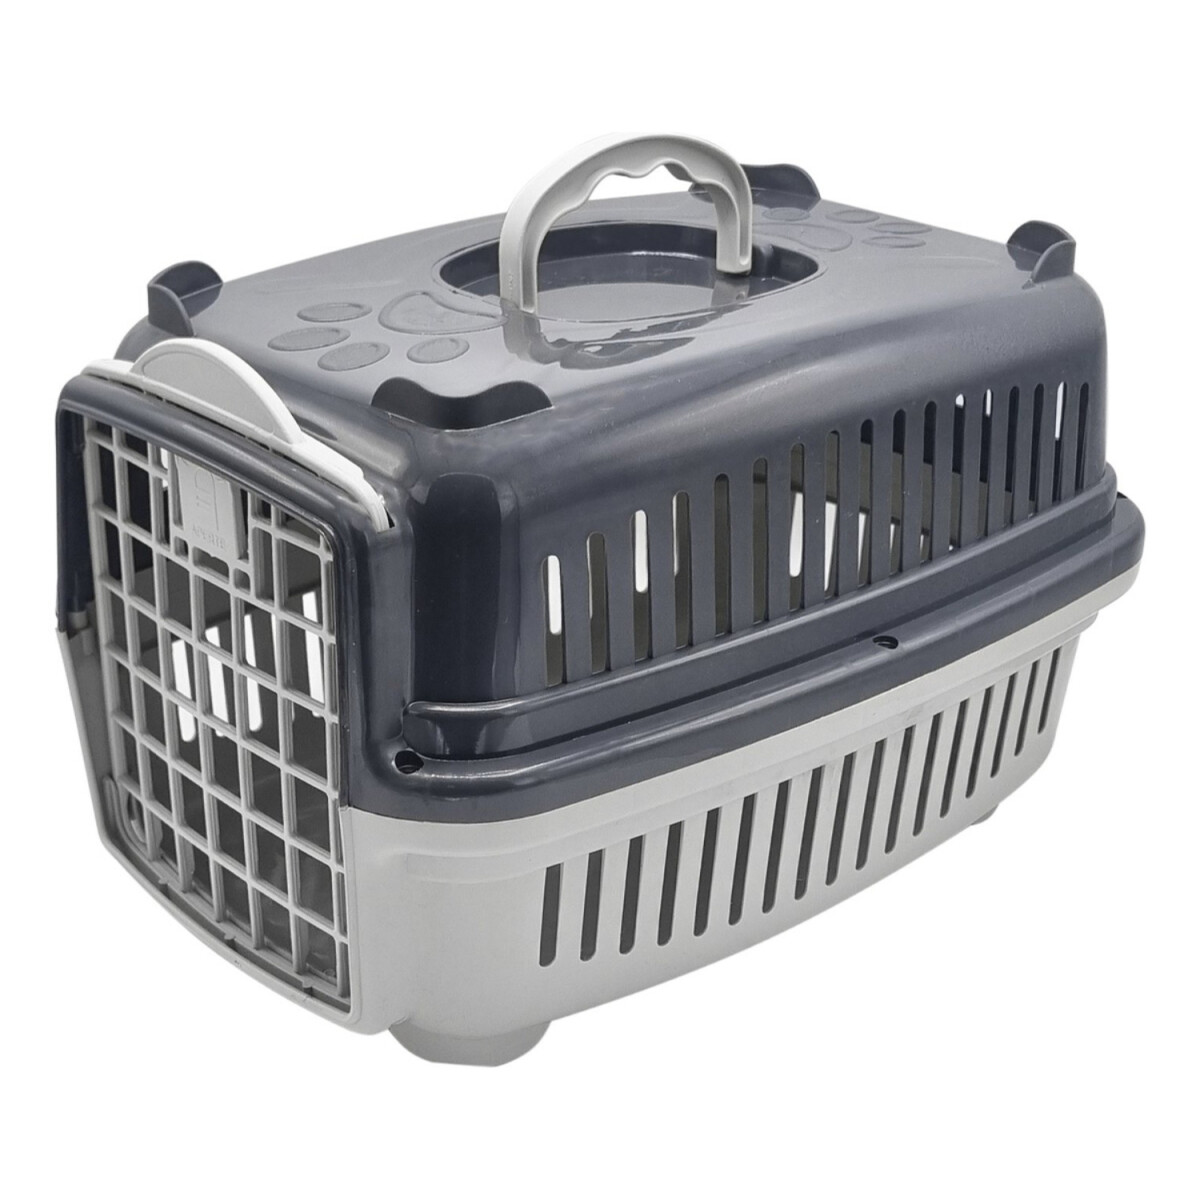 Transportadora Rígida Para Mascotas N1 Perro Gato Resistente - Variante Color Gris 